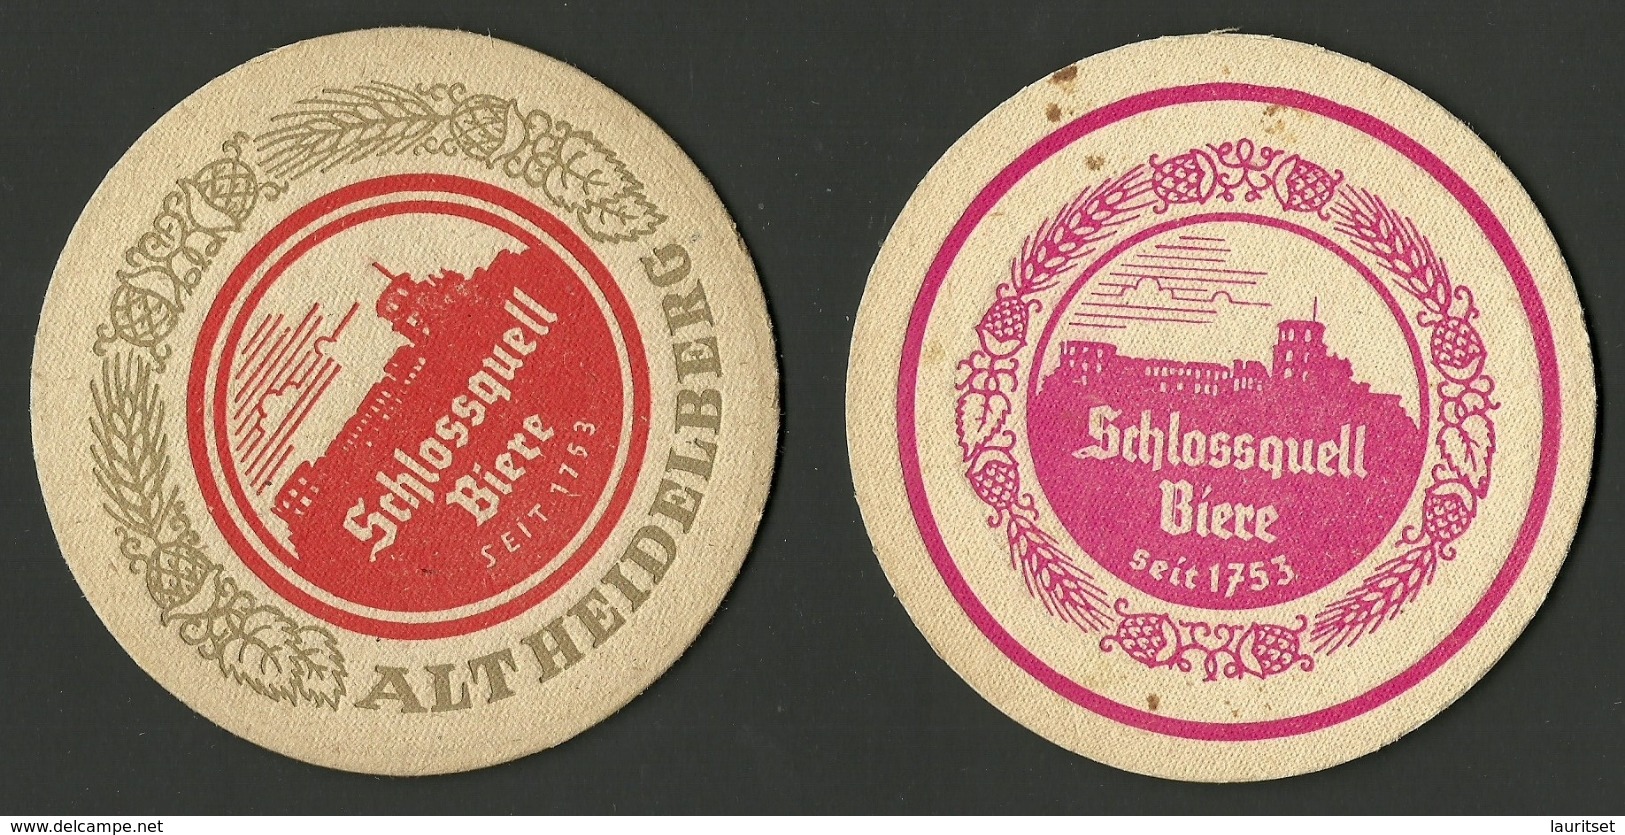 2 Alte Bierdeckel Deutschland SCHLOSSQUELL - Bierdeckel